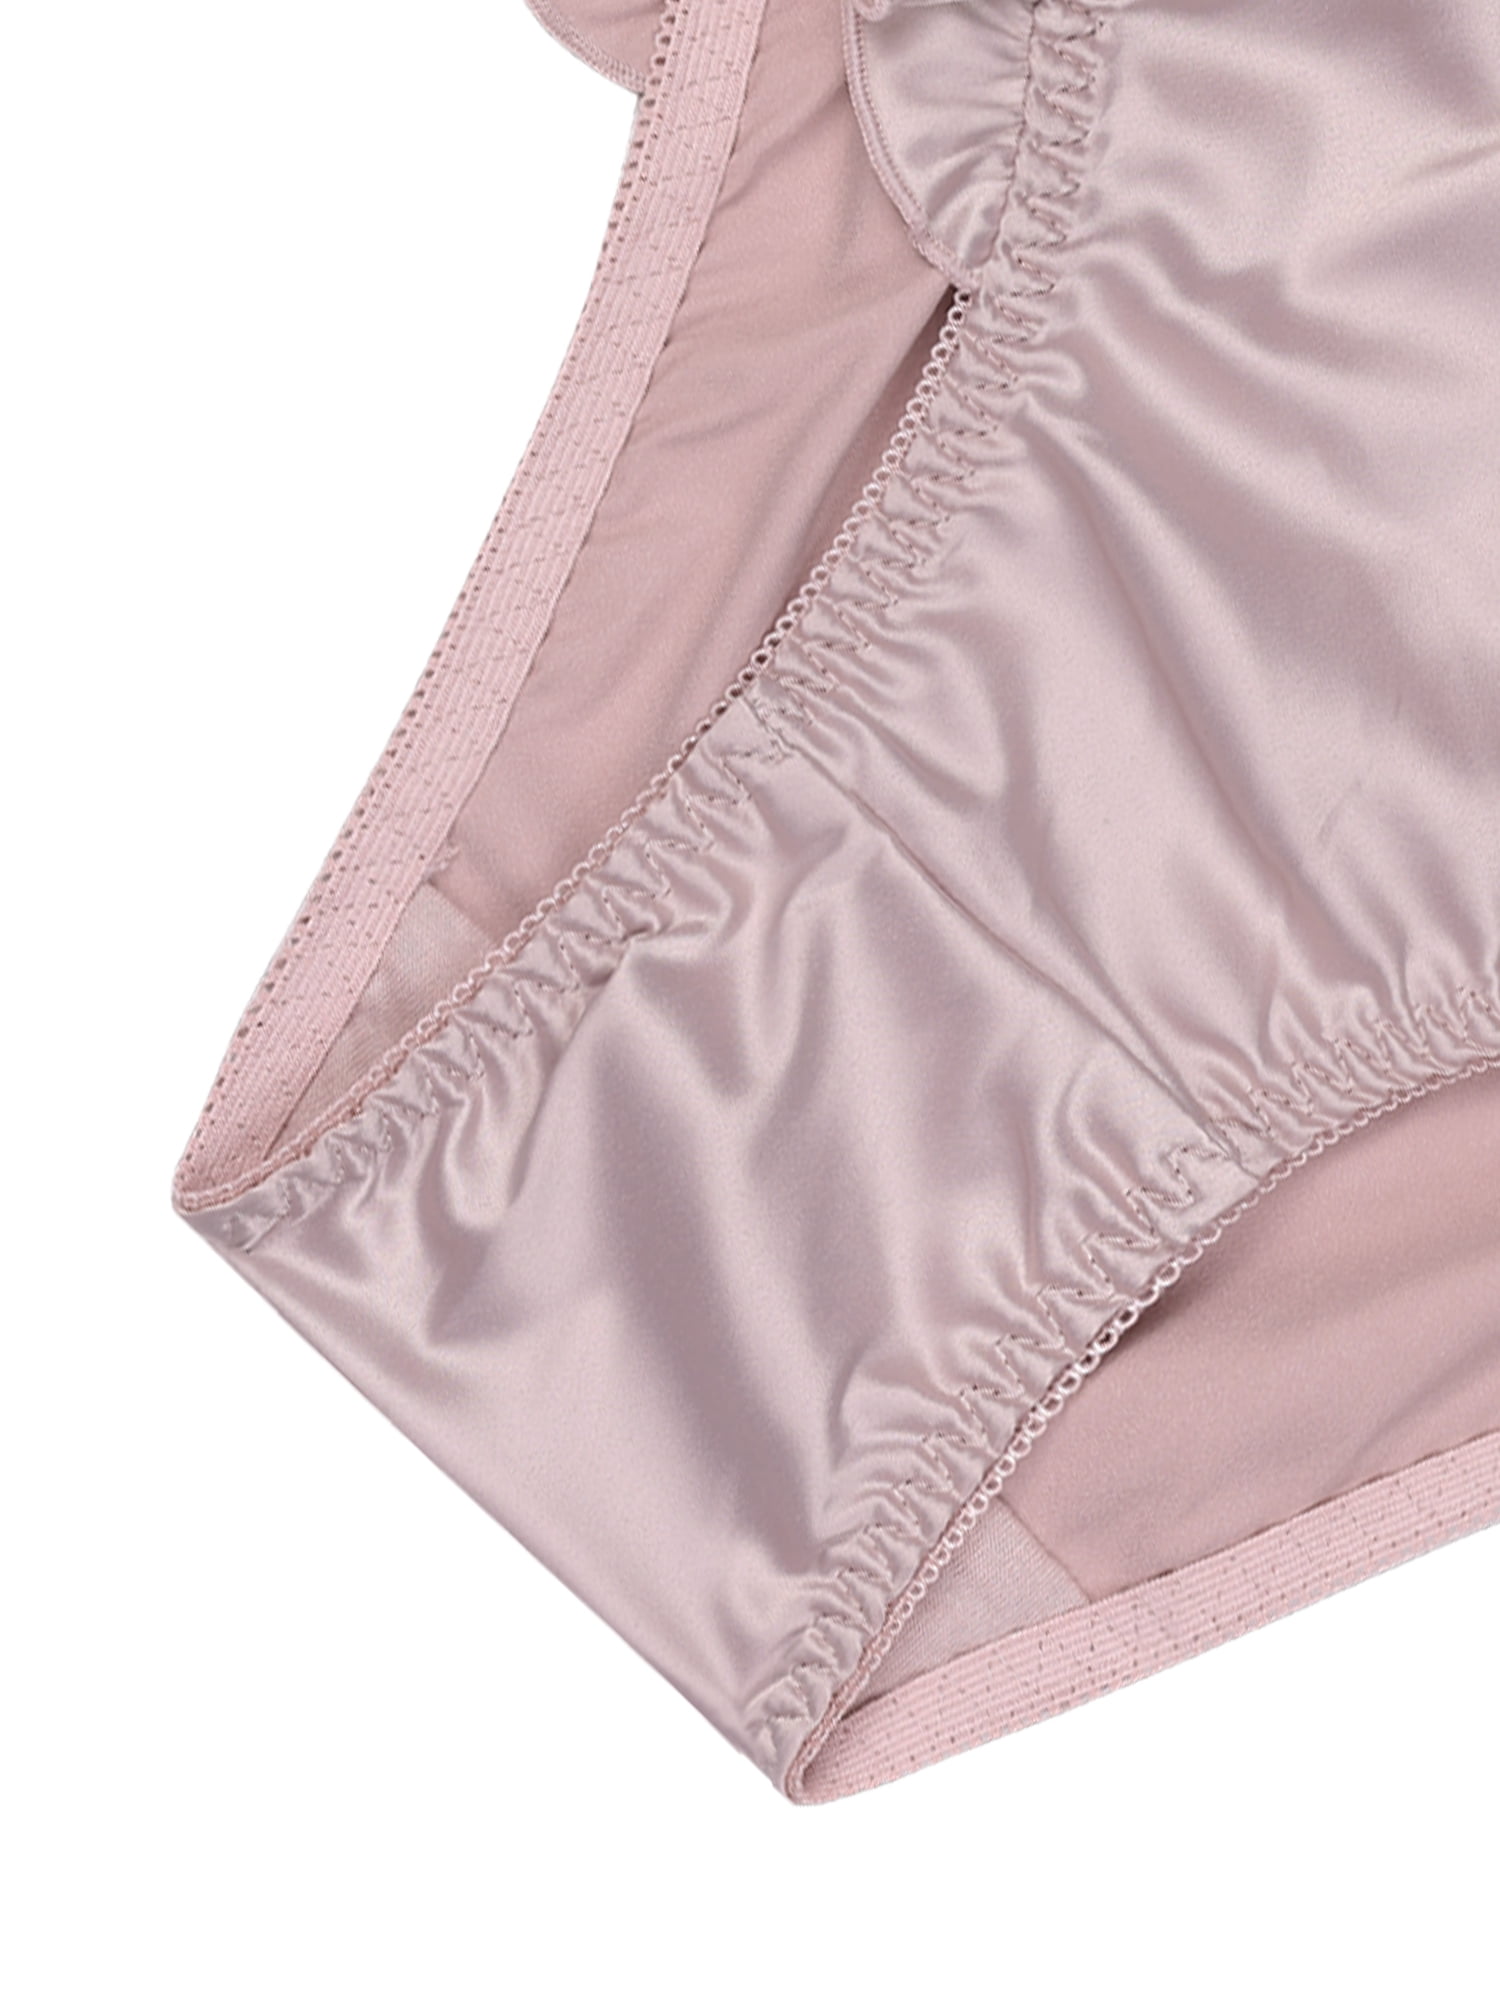 Unique Bargains Women's Satin Shiny Panties Mid-Ruffle Trim Briefs